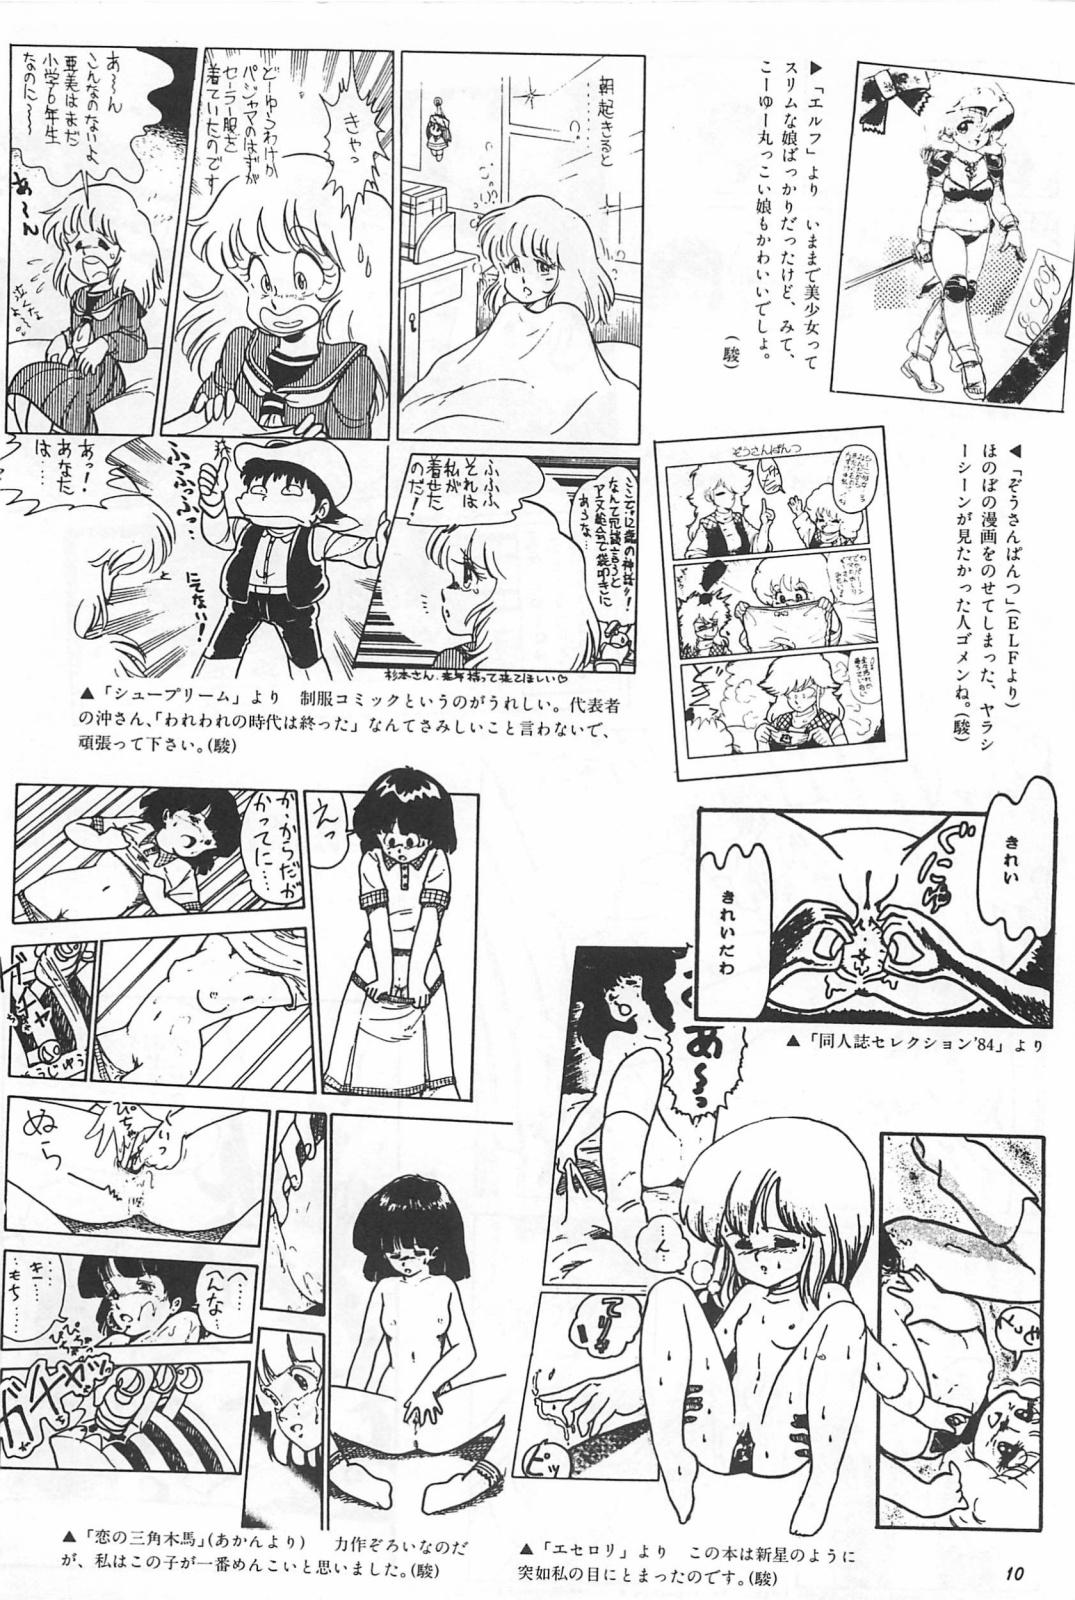 Massage Bishoujo Syndrome - Lolita syndrome - Urusei yatsura Mojada - Page 12